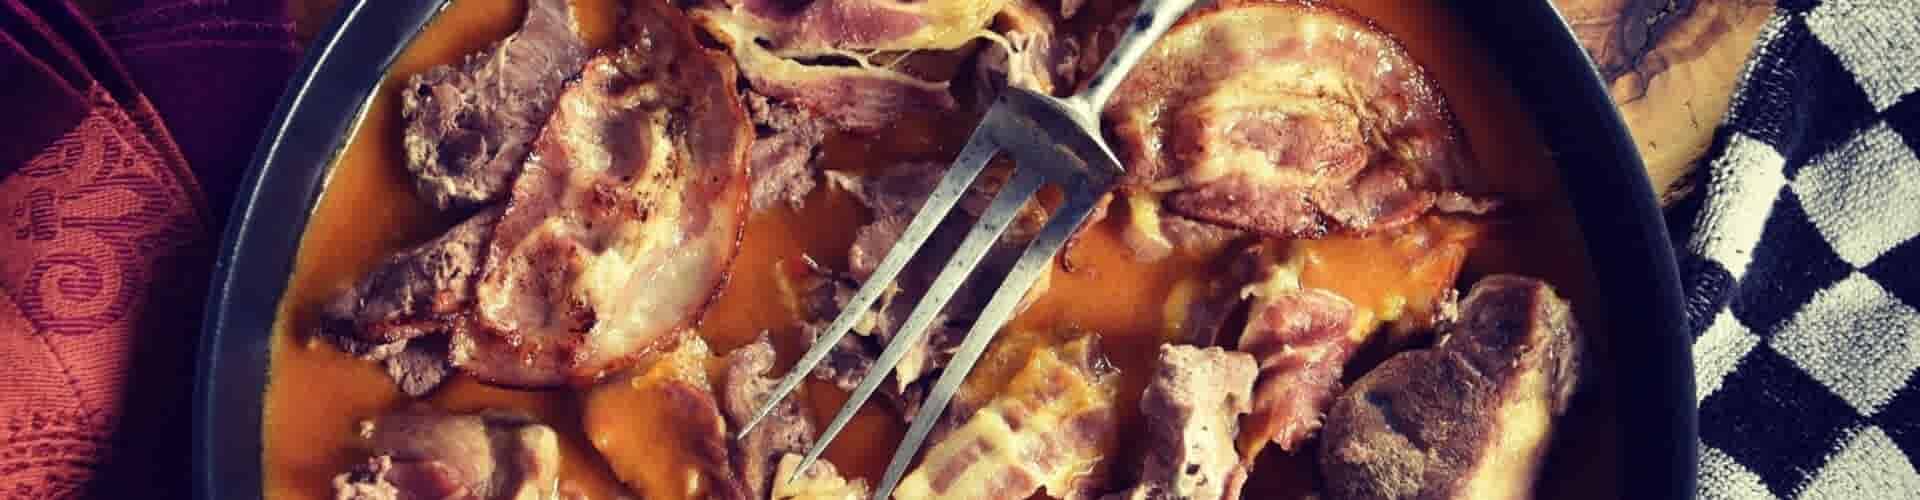 Maak gebruik van deze tips voor het bereiden van stoofvlees